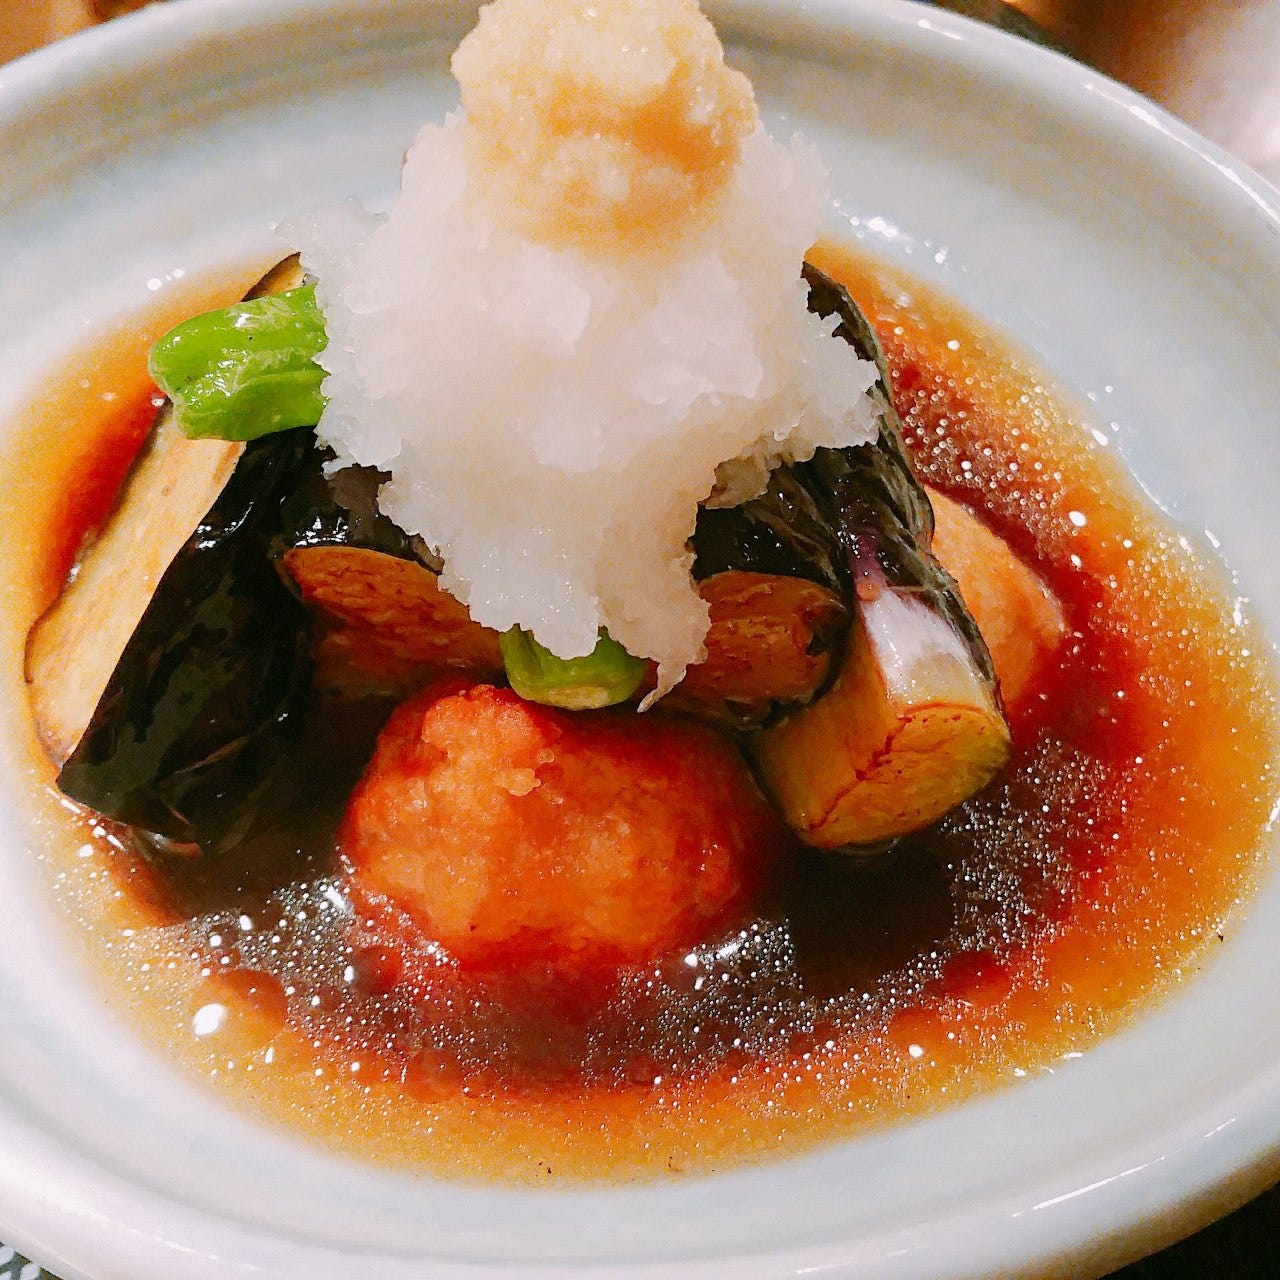 新宿和食和彩美相片 新宿 生魚片 海鮮料理 Gurunavi 日本美食餐廳指南